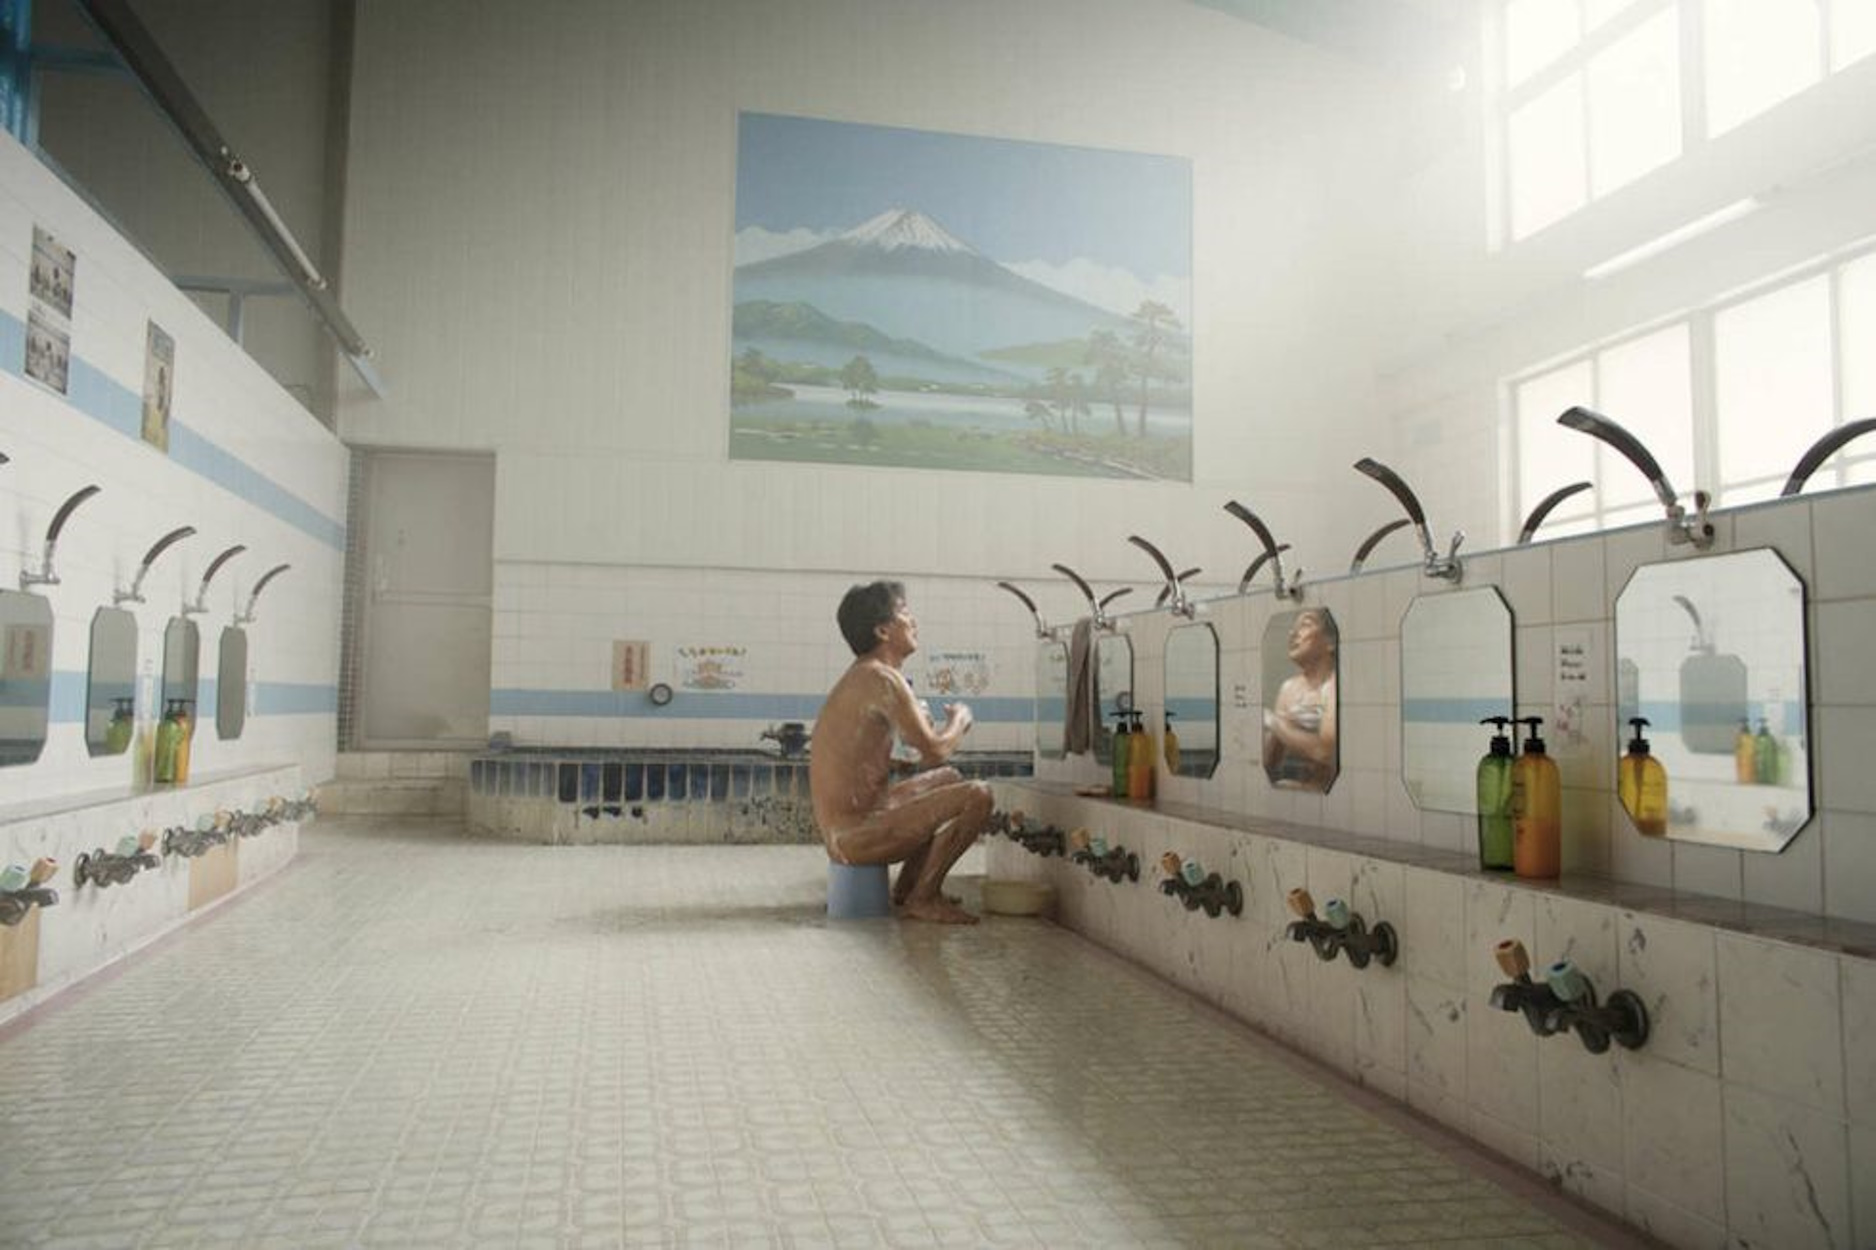 Anar a veure una pel·lícula sobre els lavabos de Tòquio i descobrir una obra d'art